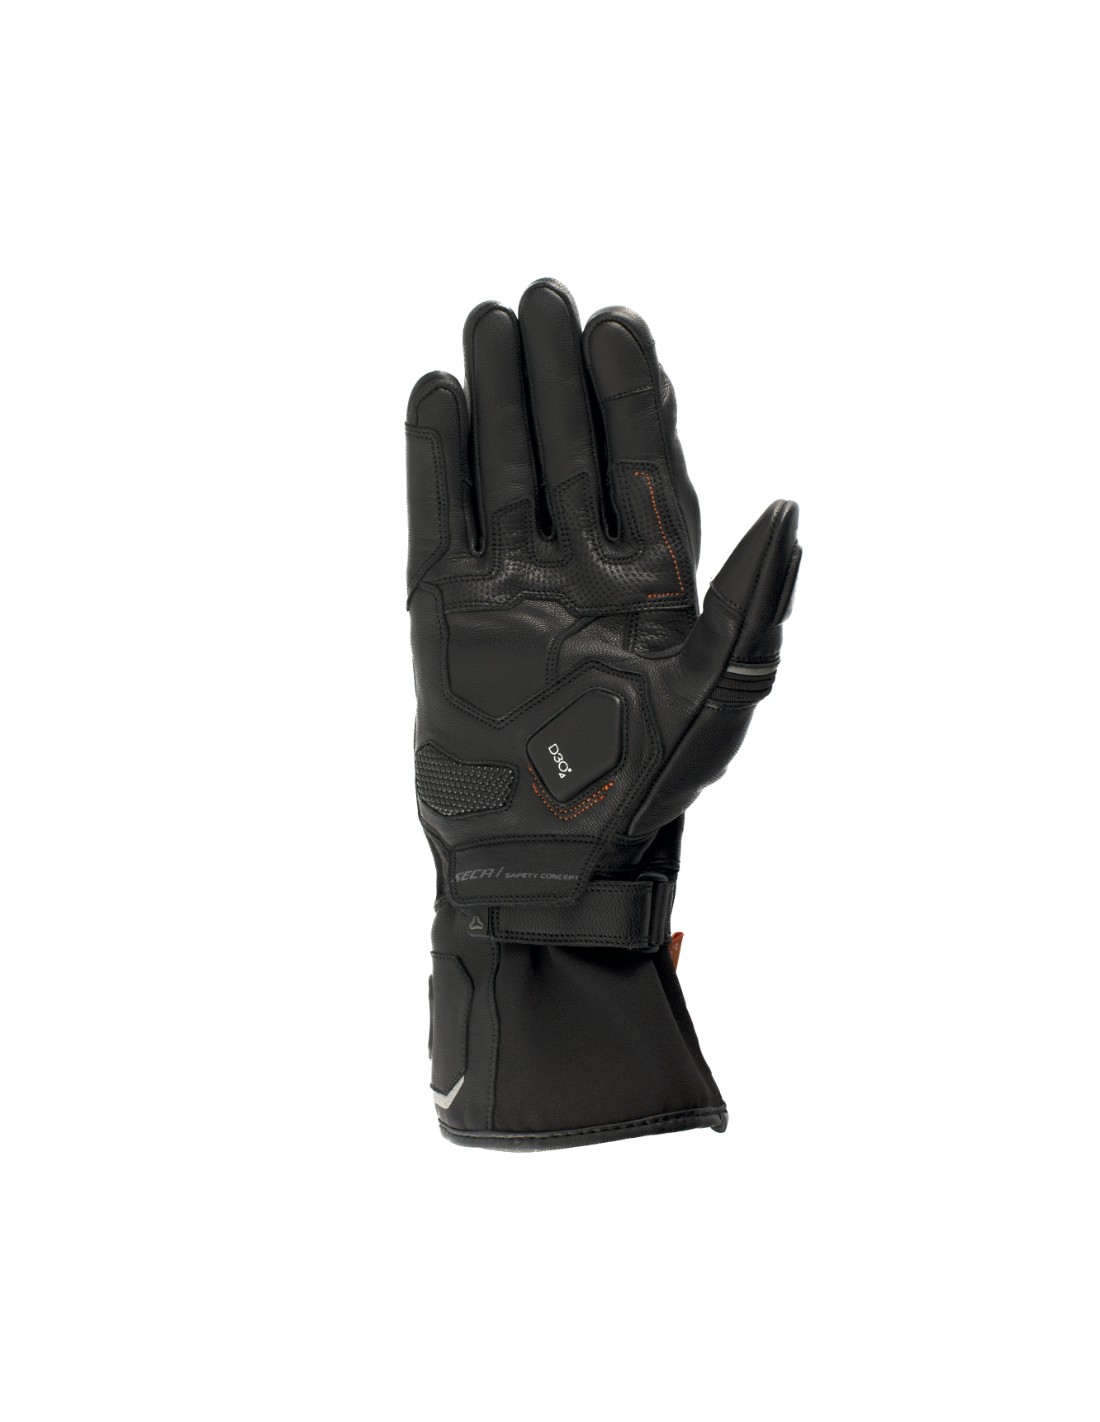 Мотоперчатки кожаные Seca Storm D3O черный 